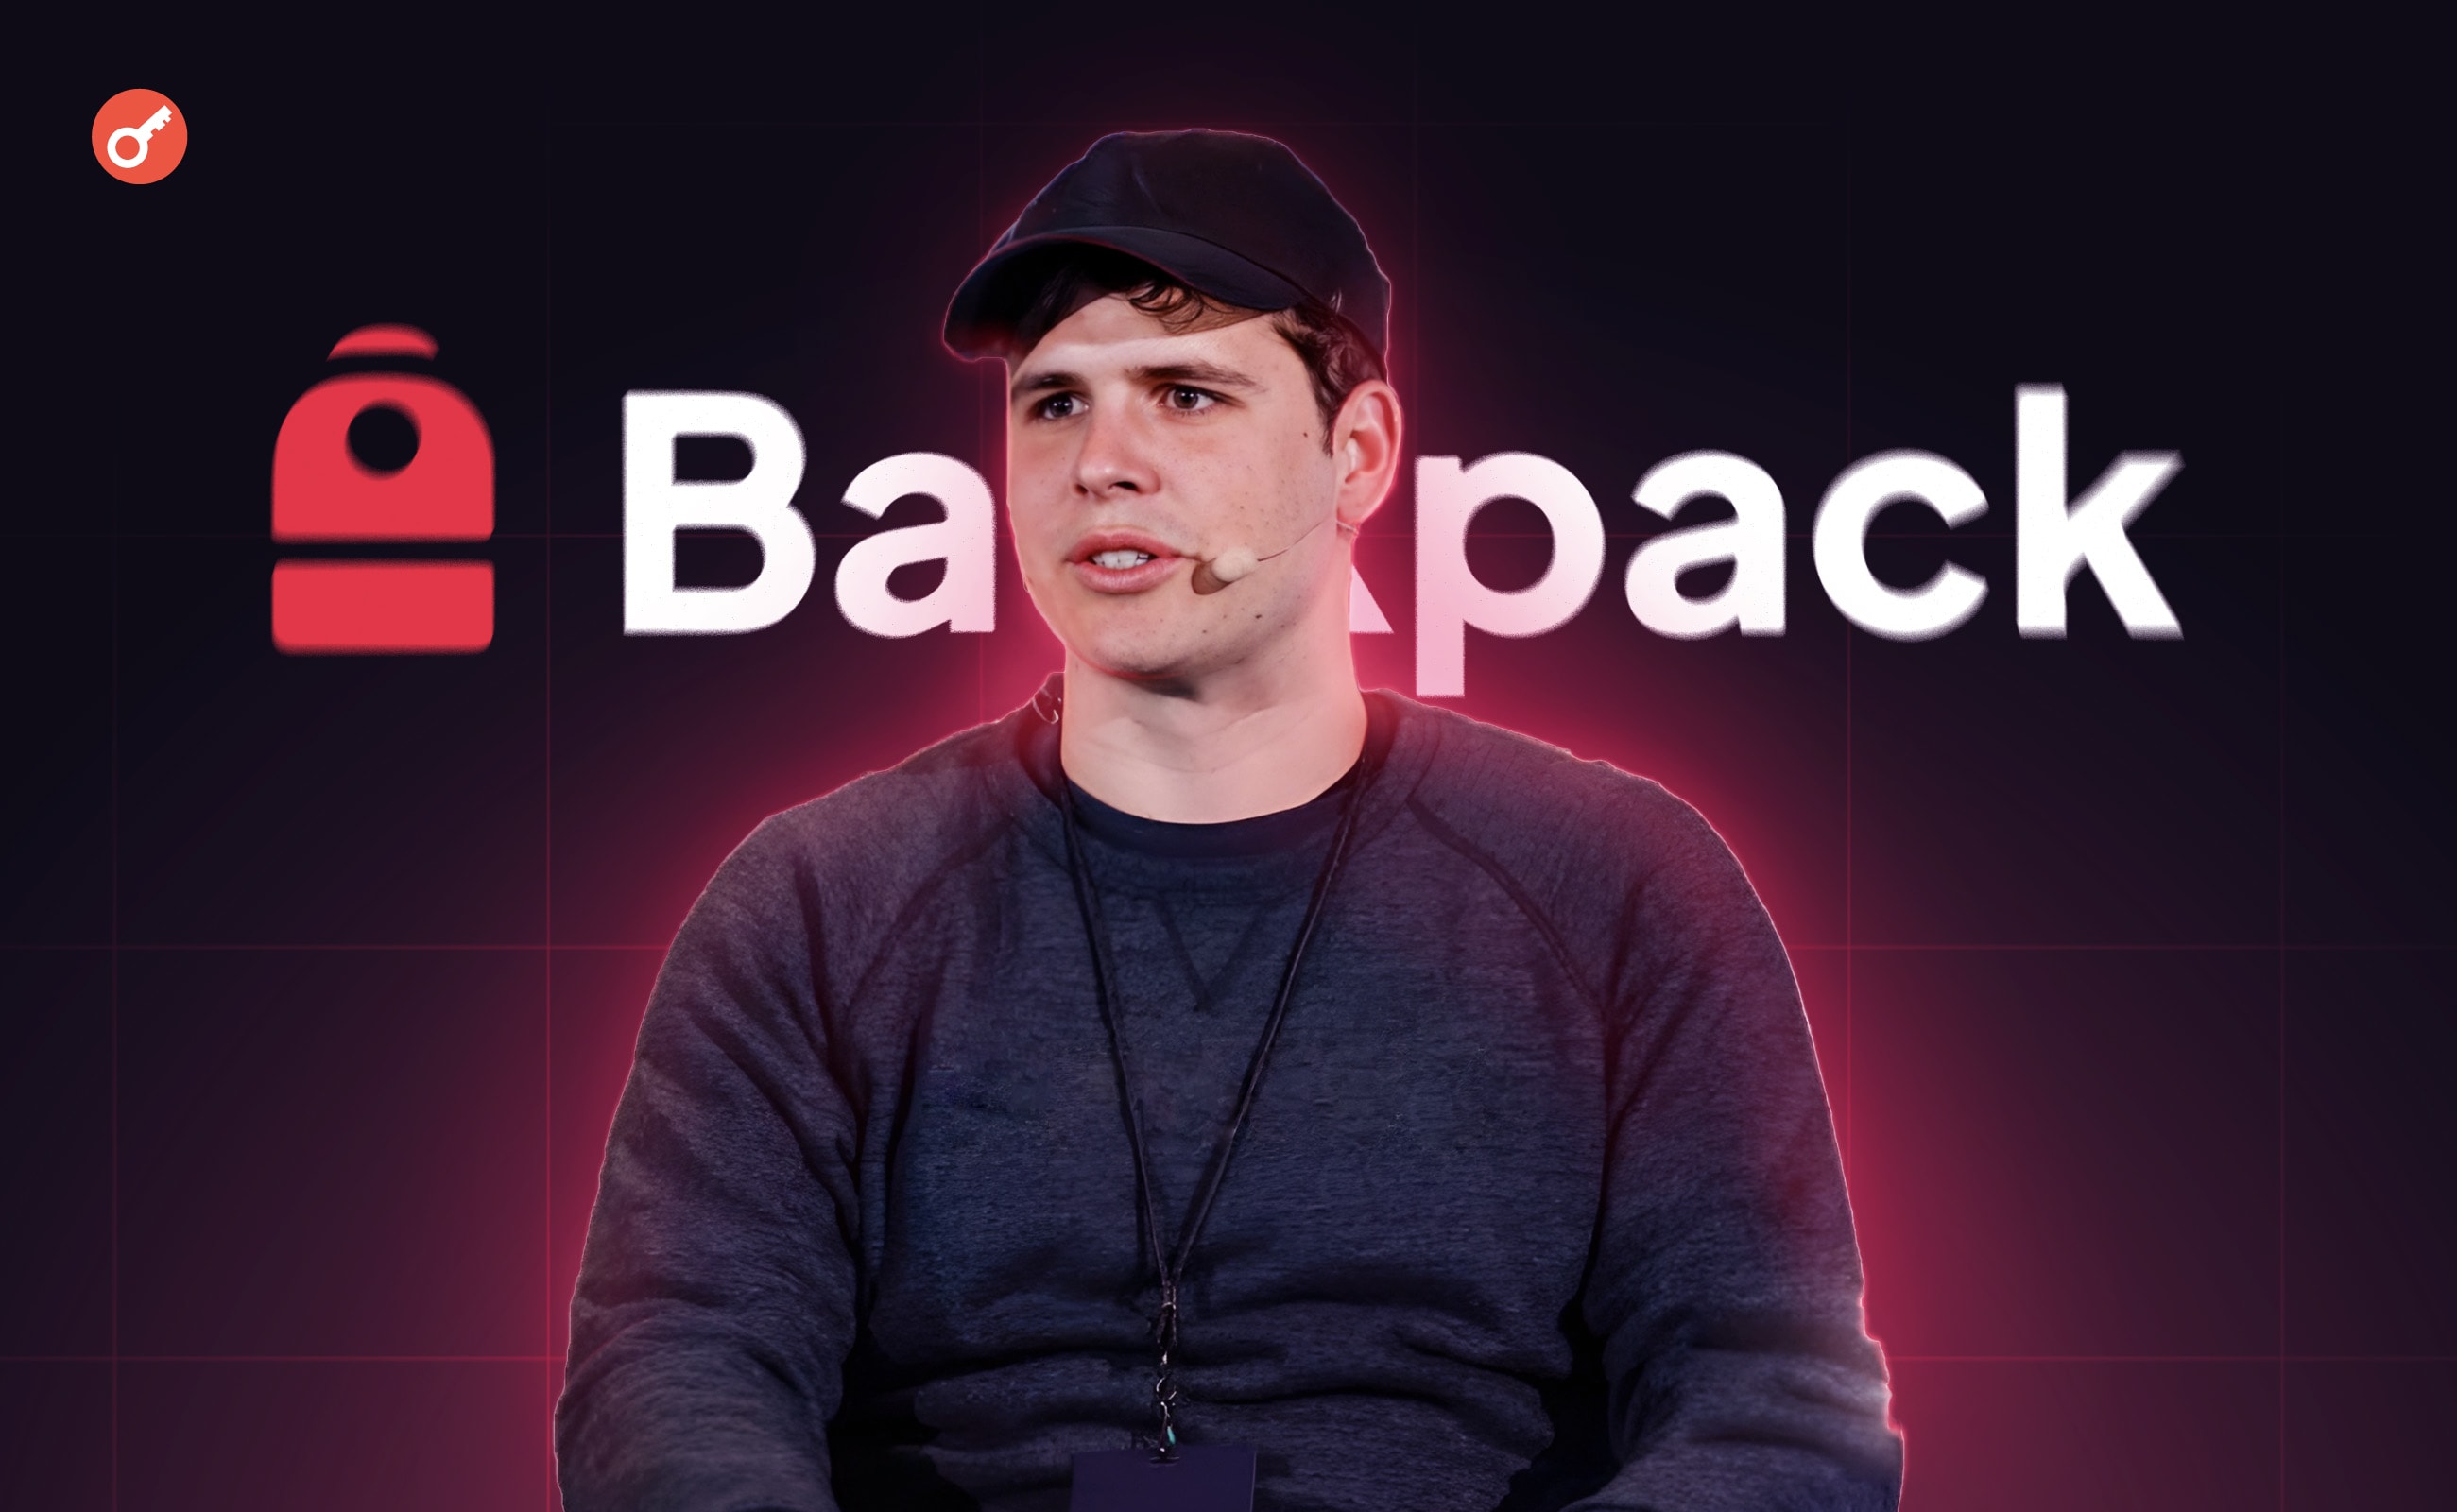 WeChat dla kryptowalut: wywiad ze współzałożycielem Backpack, Tristanem Iverem. Główny kolaż wiadomości.